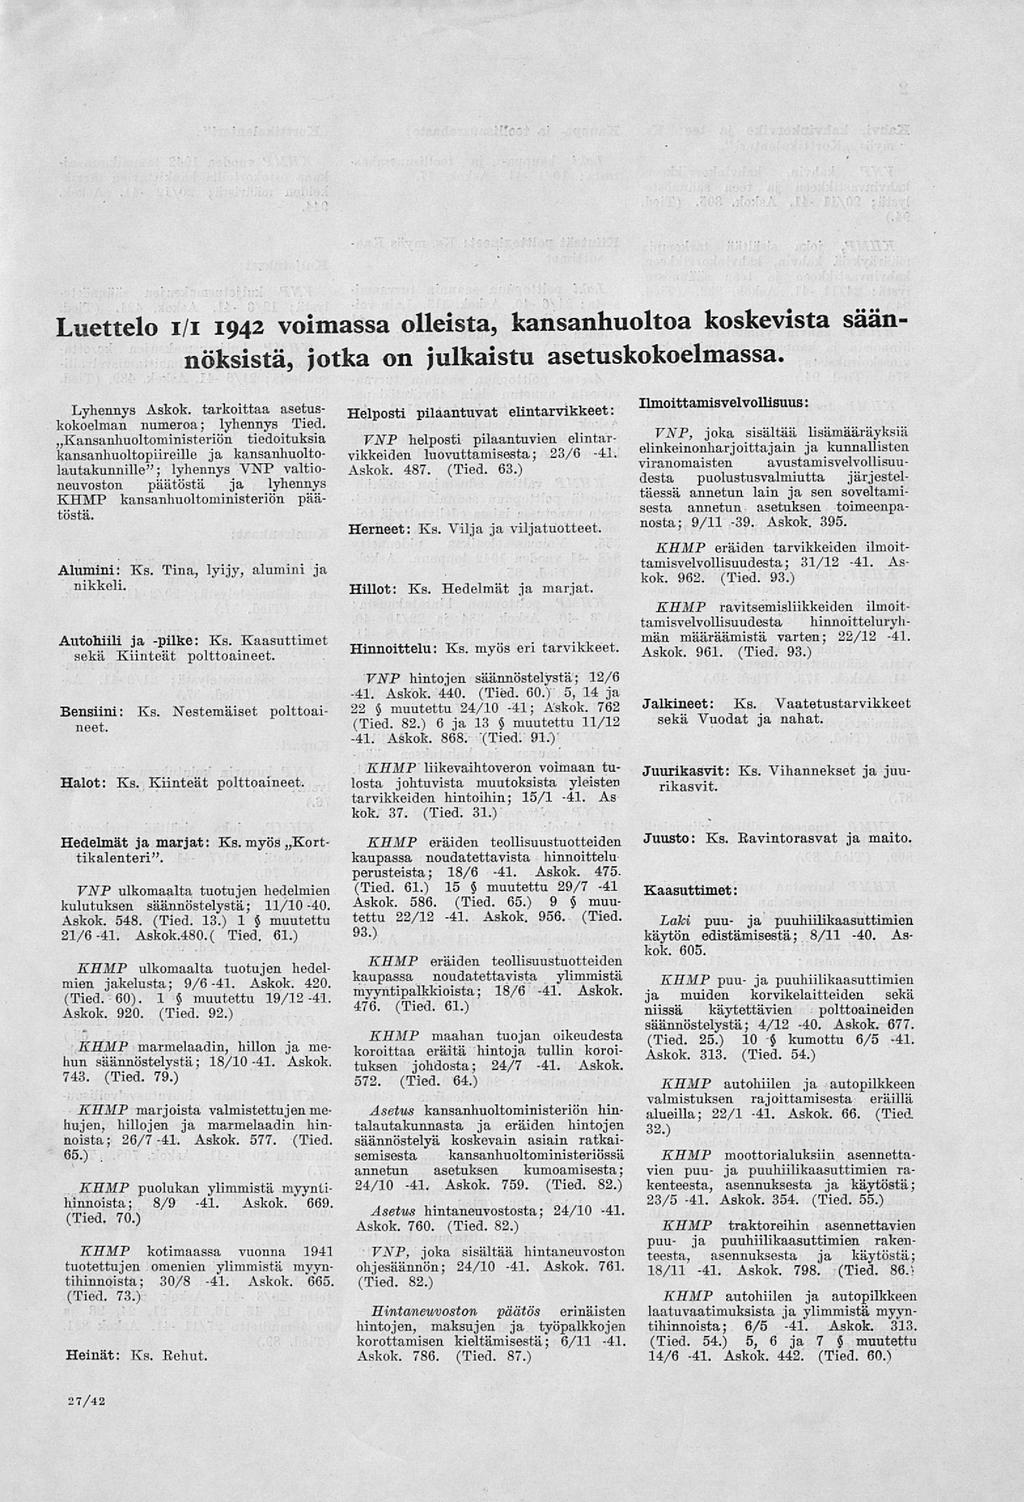 Luettelo i/i 1942 voimassa olleista, kansanhuoltoa koskevista säännöksistä, jotka on julkaistu asetuskokoelmassa. Alumini: Ks. Tina, lyijy, alumini ja nikkeli. Autohiili ja -pilke: Ks.